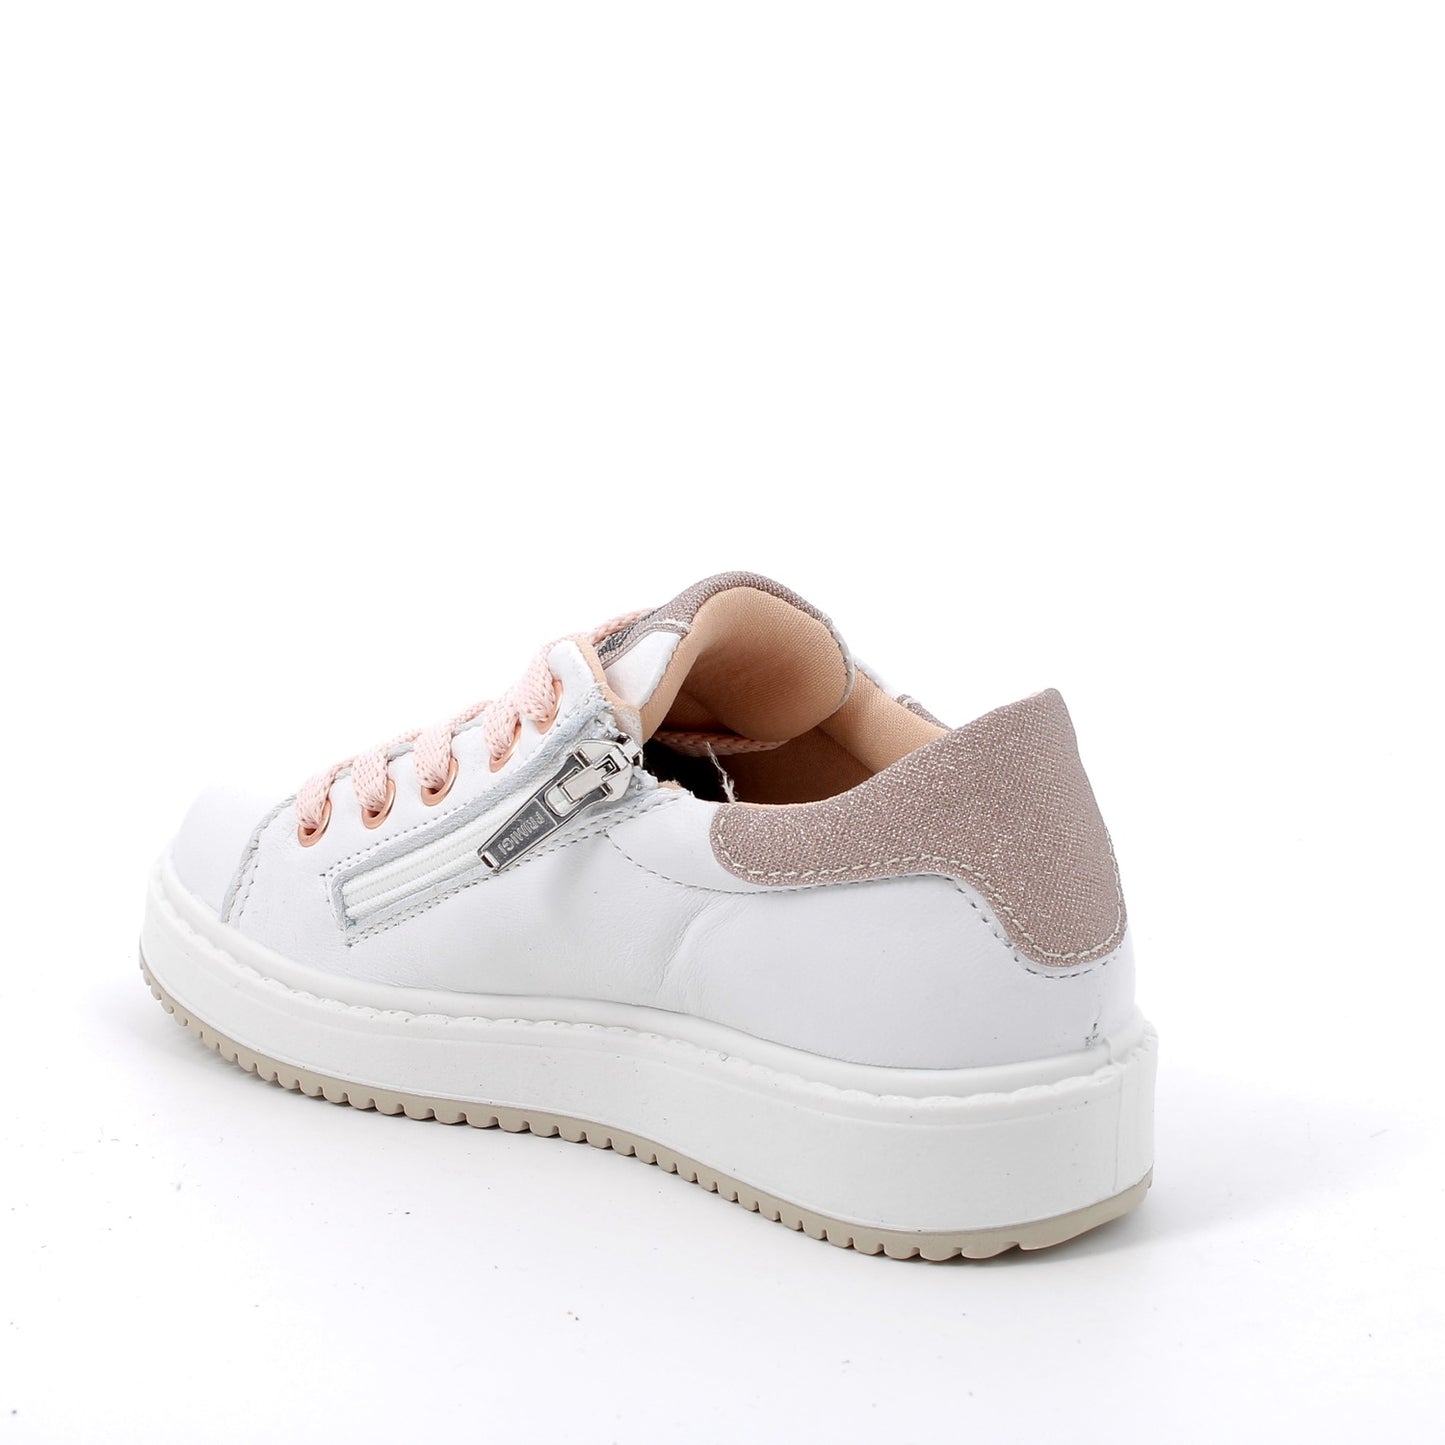 Primigi kids Sneakers bianca glitter con lacci e chiusura zip - bianco e rosa - Primigi